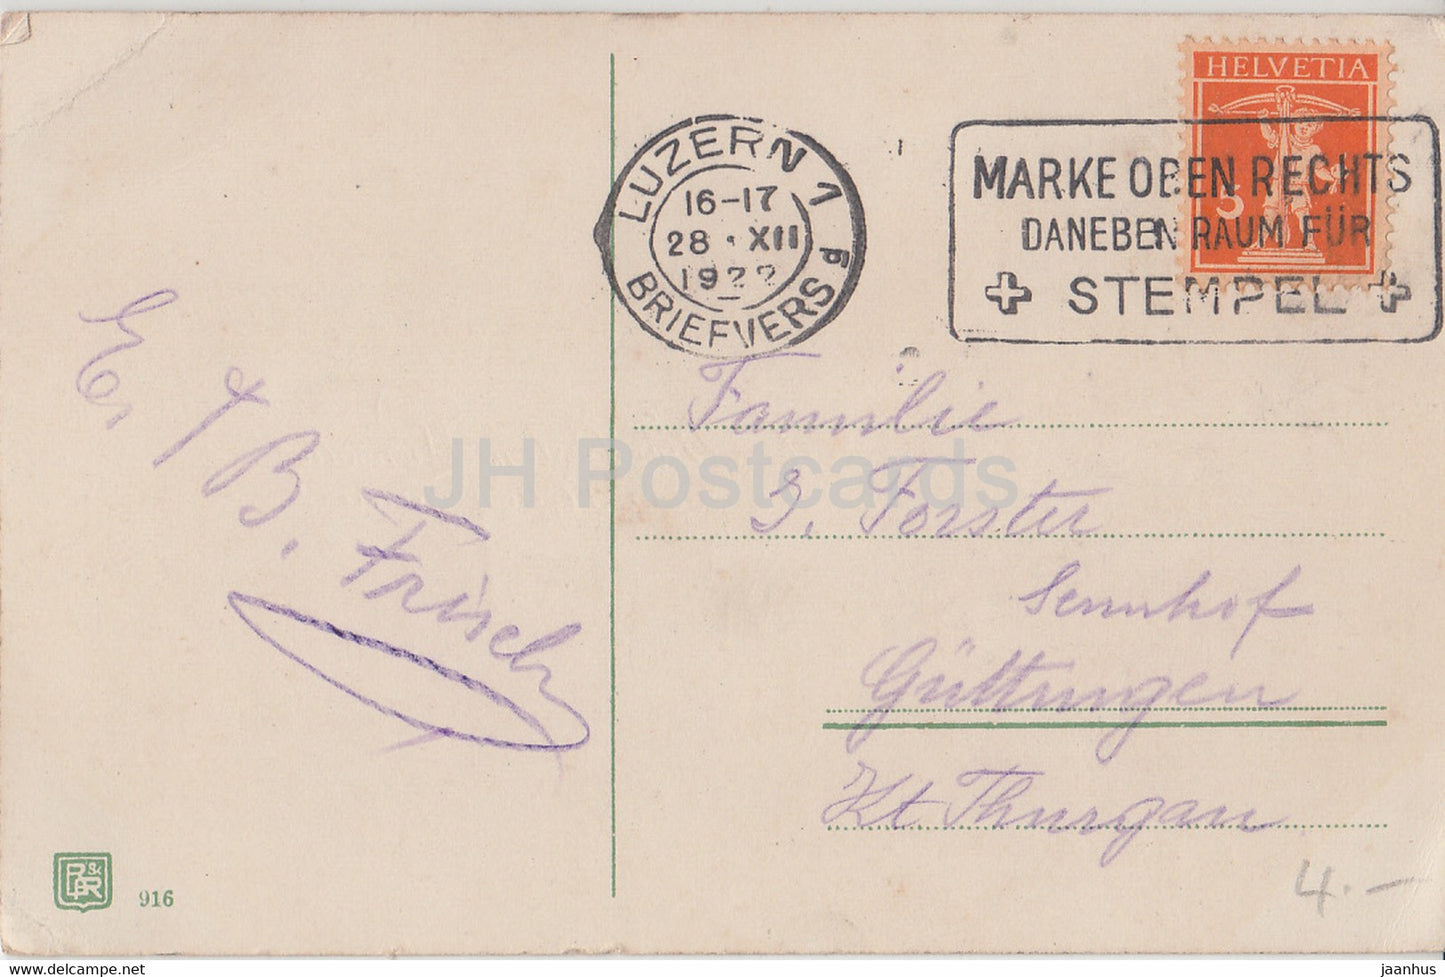 Carte de vœux du Nouvel An - Die Besten Wunsche zum neuen Jahre - fleurs - BR 916 - carte postale ancienne - 1922 - Allemagne - utilisé